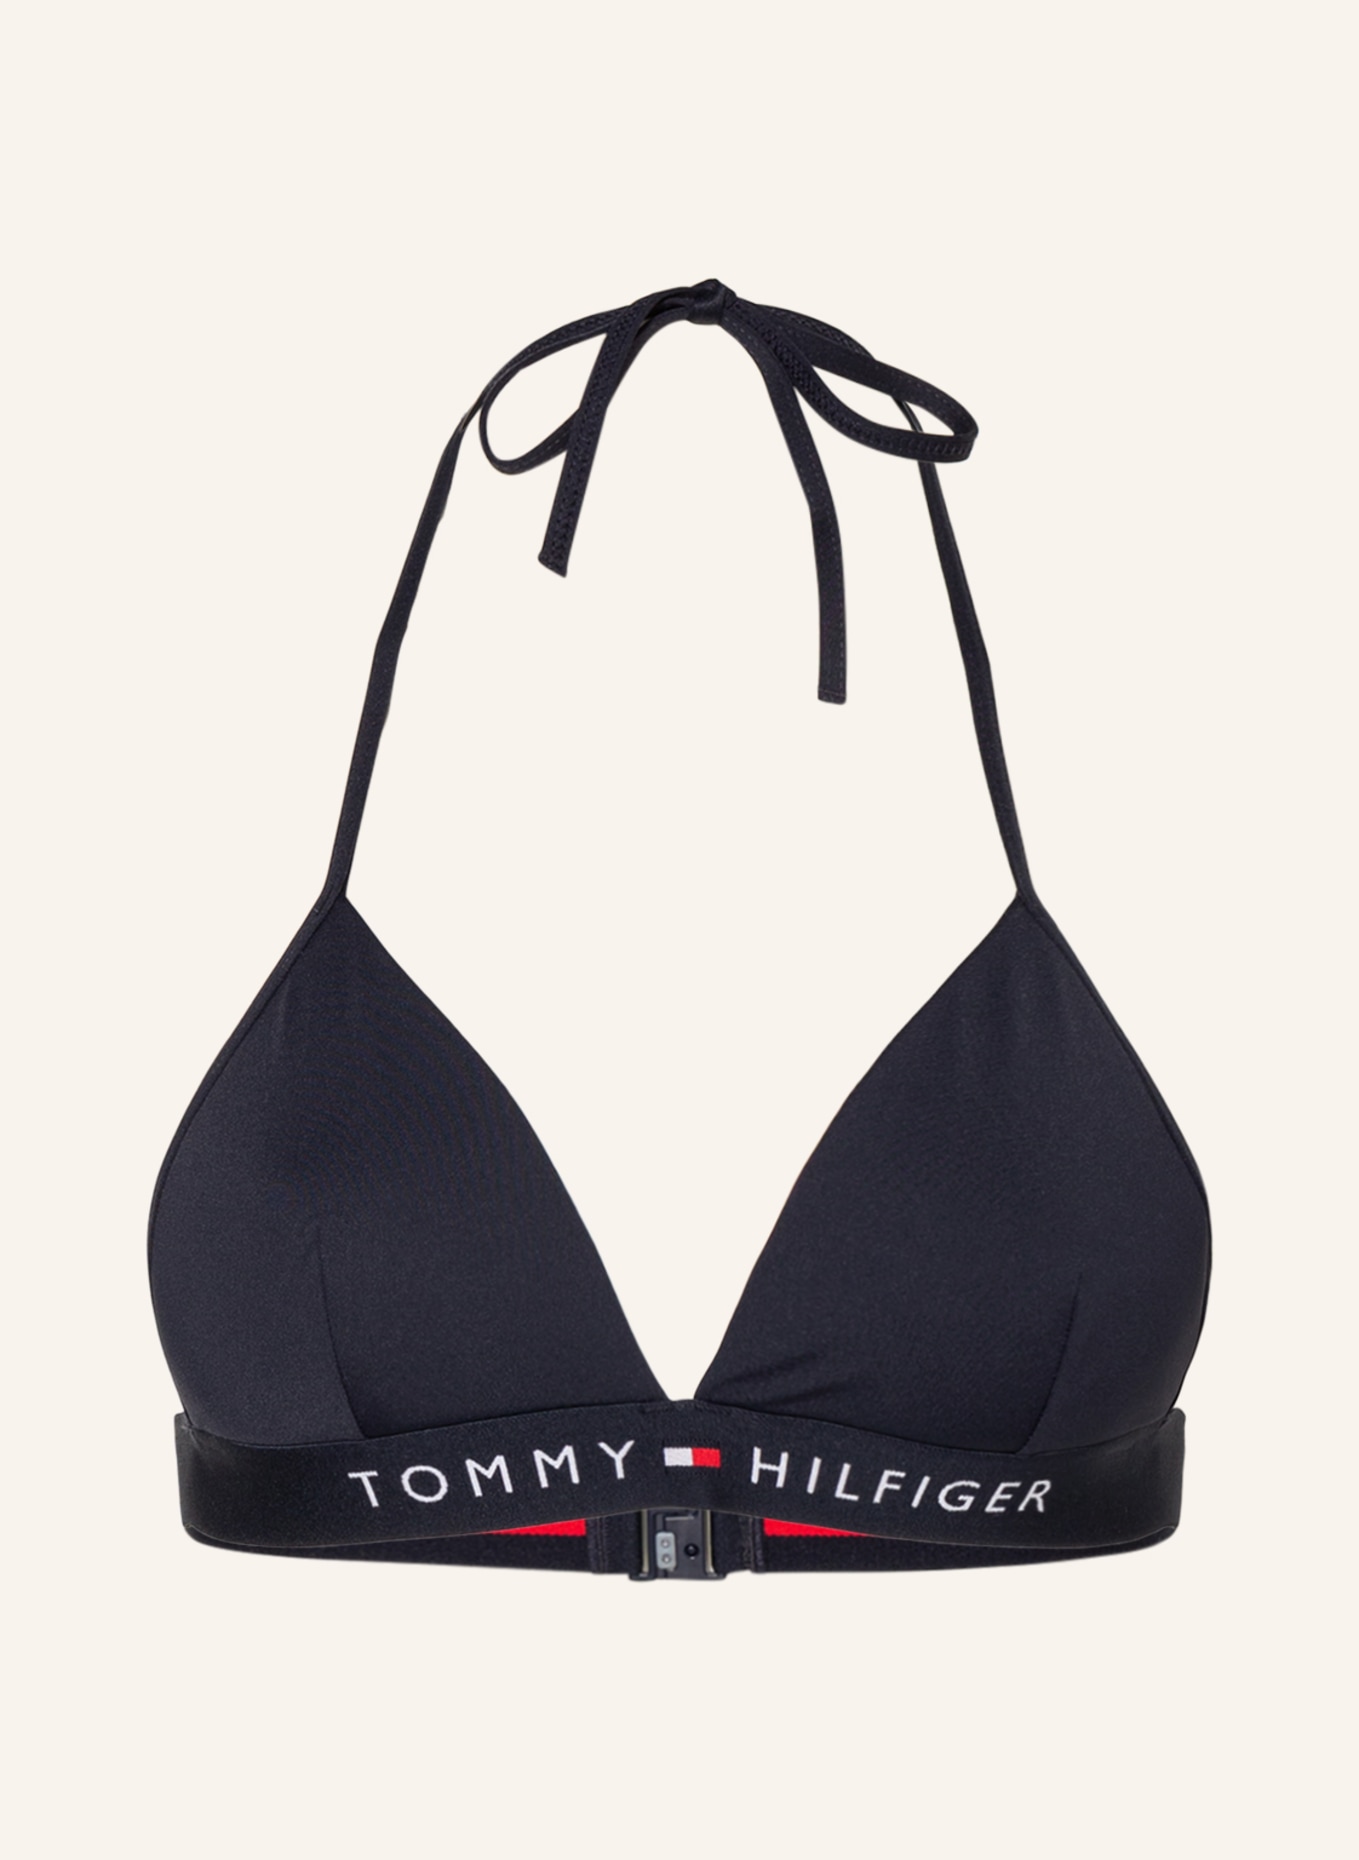 TOMMY HILFIGER Triangel-Bikini-Top, Farbe: DUNKELBLAU (Bild 1)